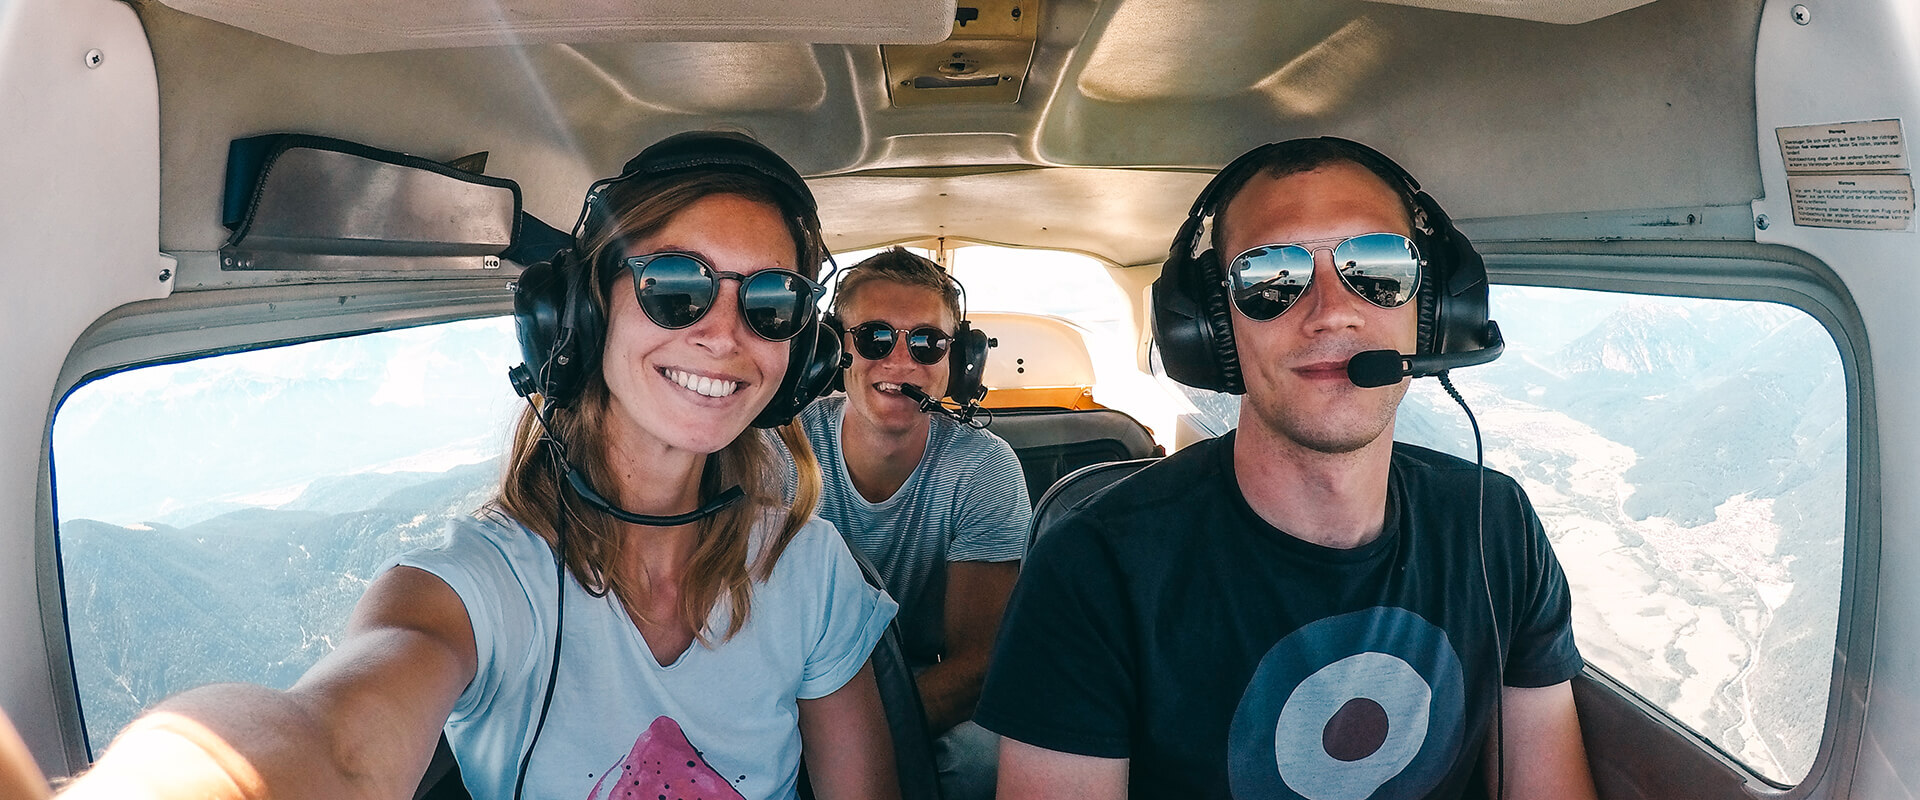 Wunderschöner Flug über die Alpen mit zwei befreundeten Piloten